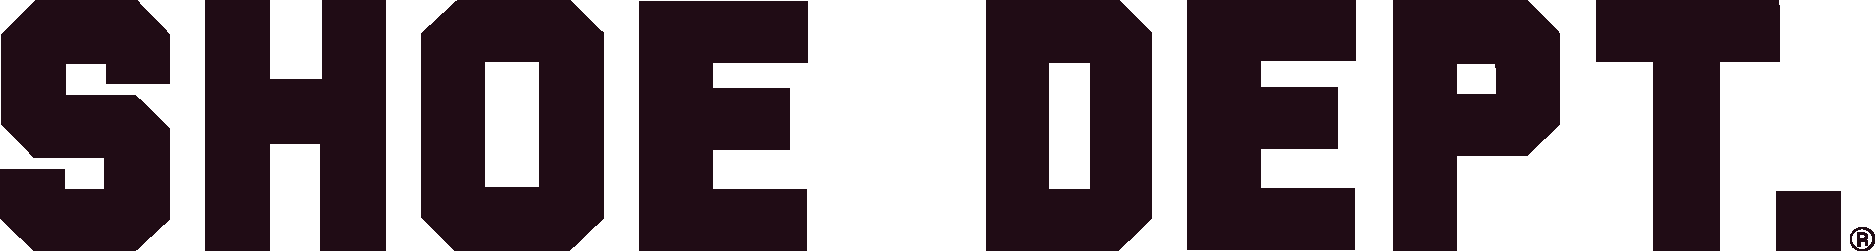 SHOE DEPT Logo Vector - (.Ai .PNG .SVG .EPS Free Download)